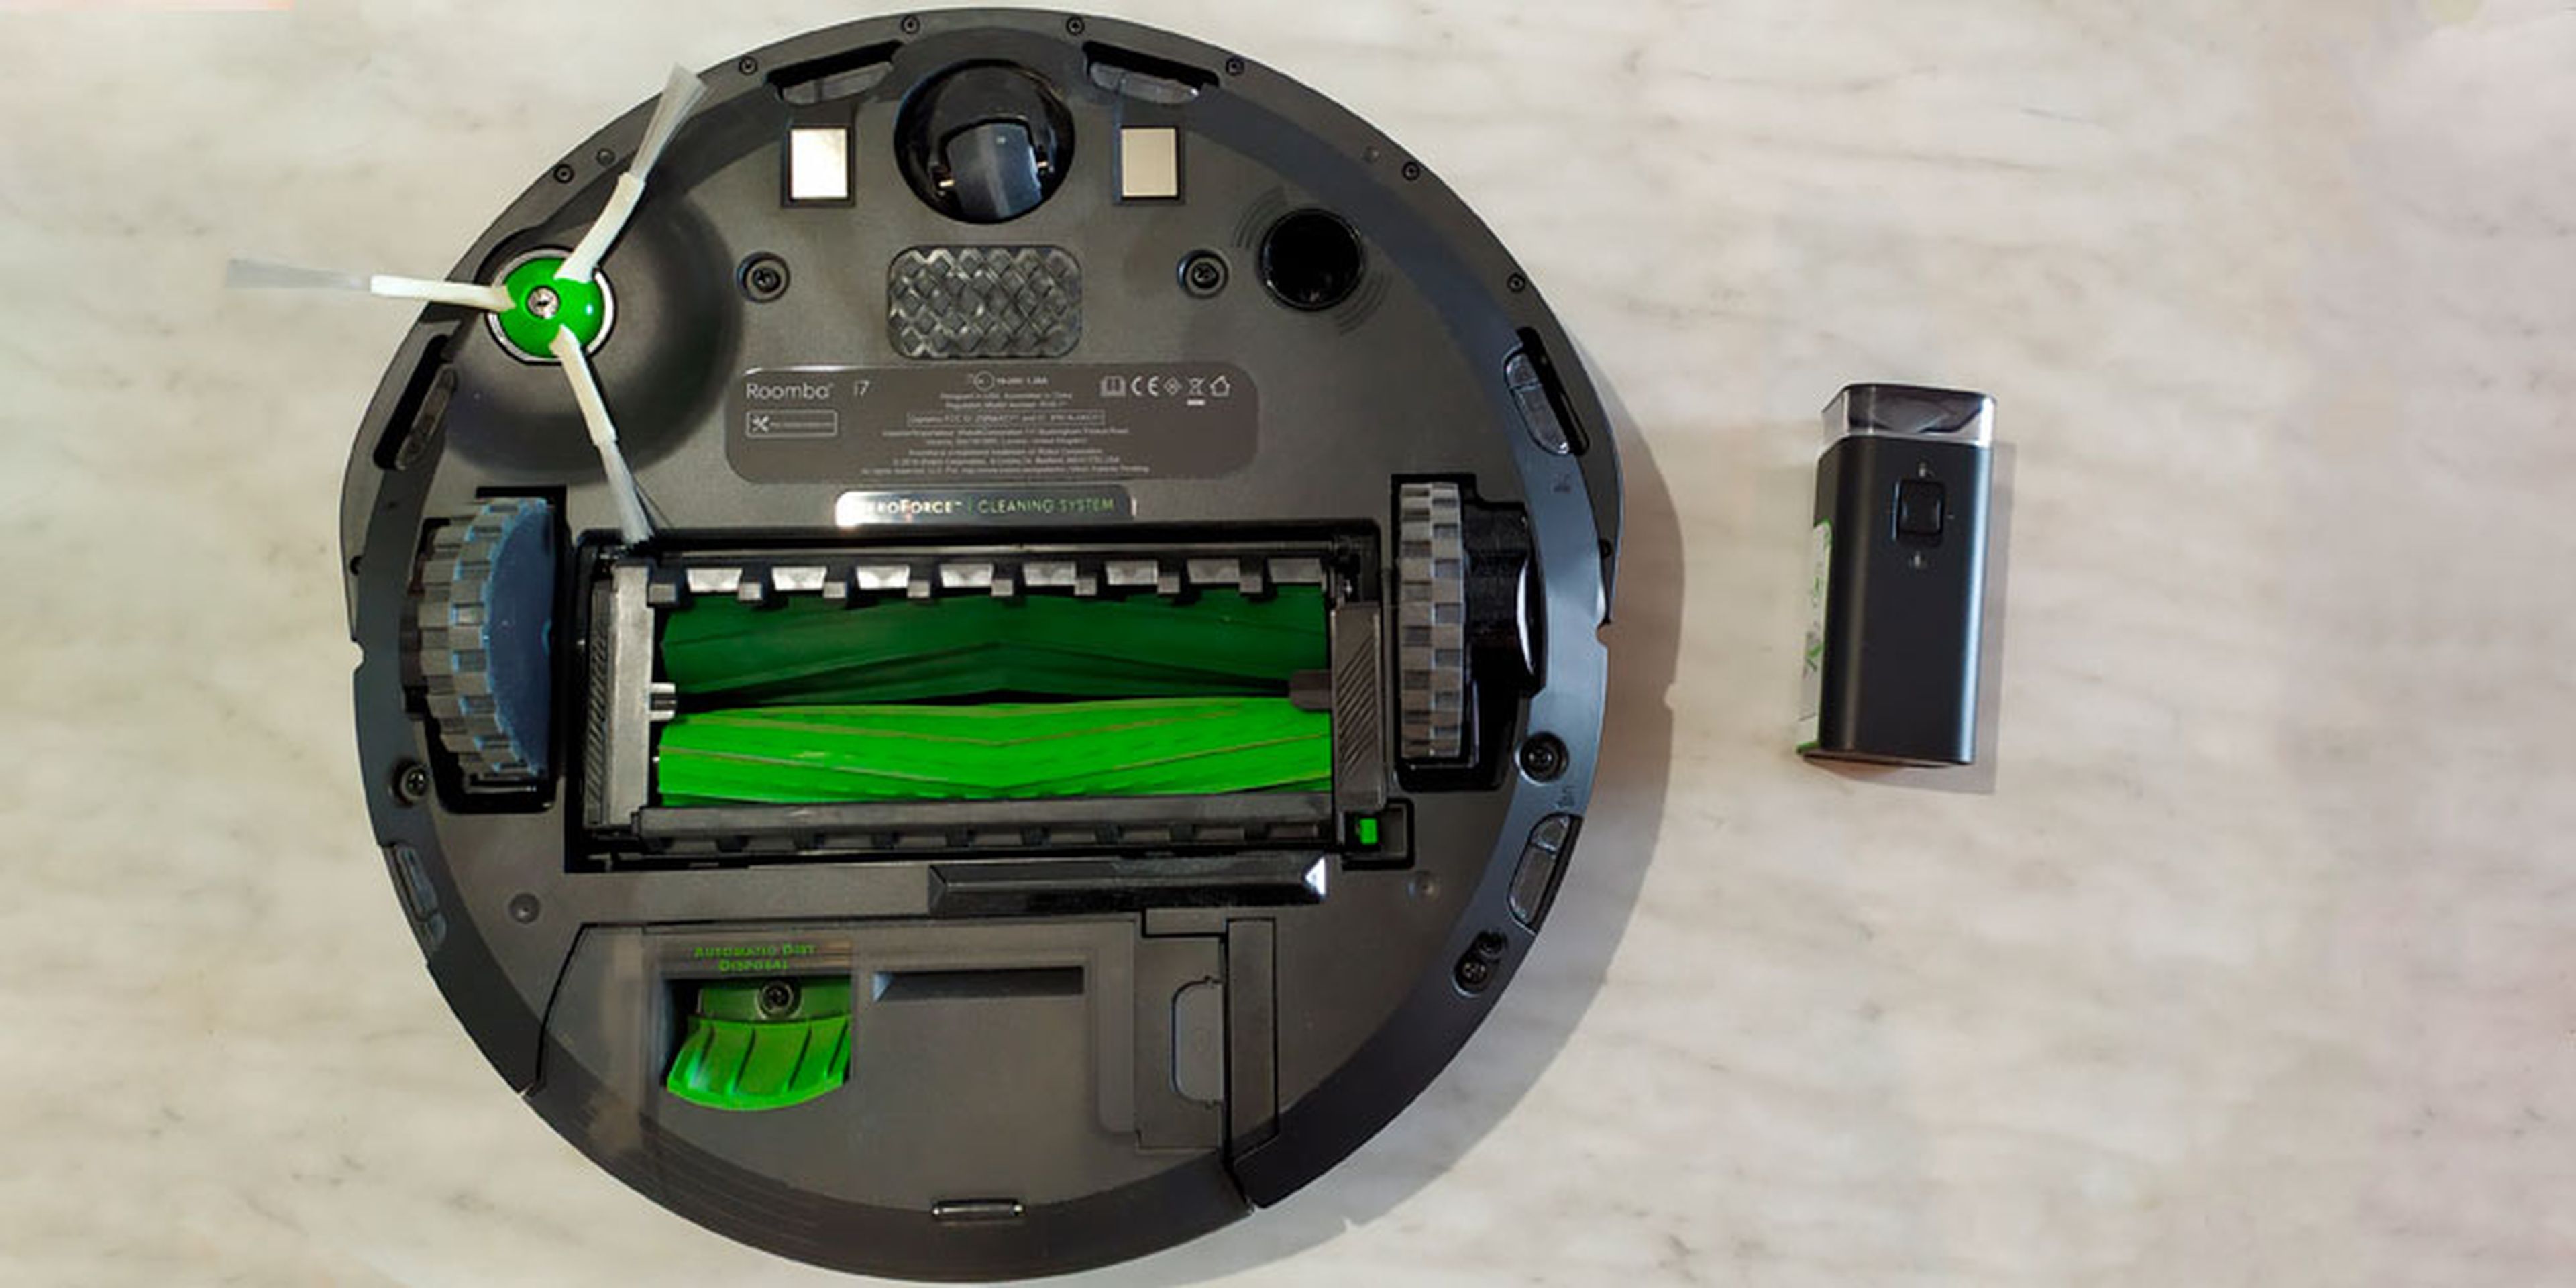 Análisis iRobot Roomba i7+: características, limpieza y opinión